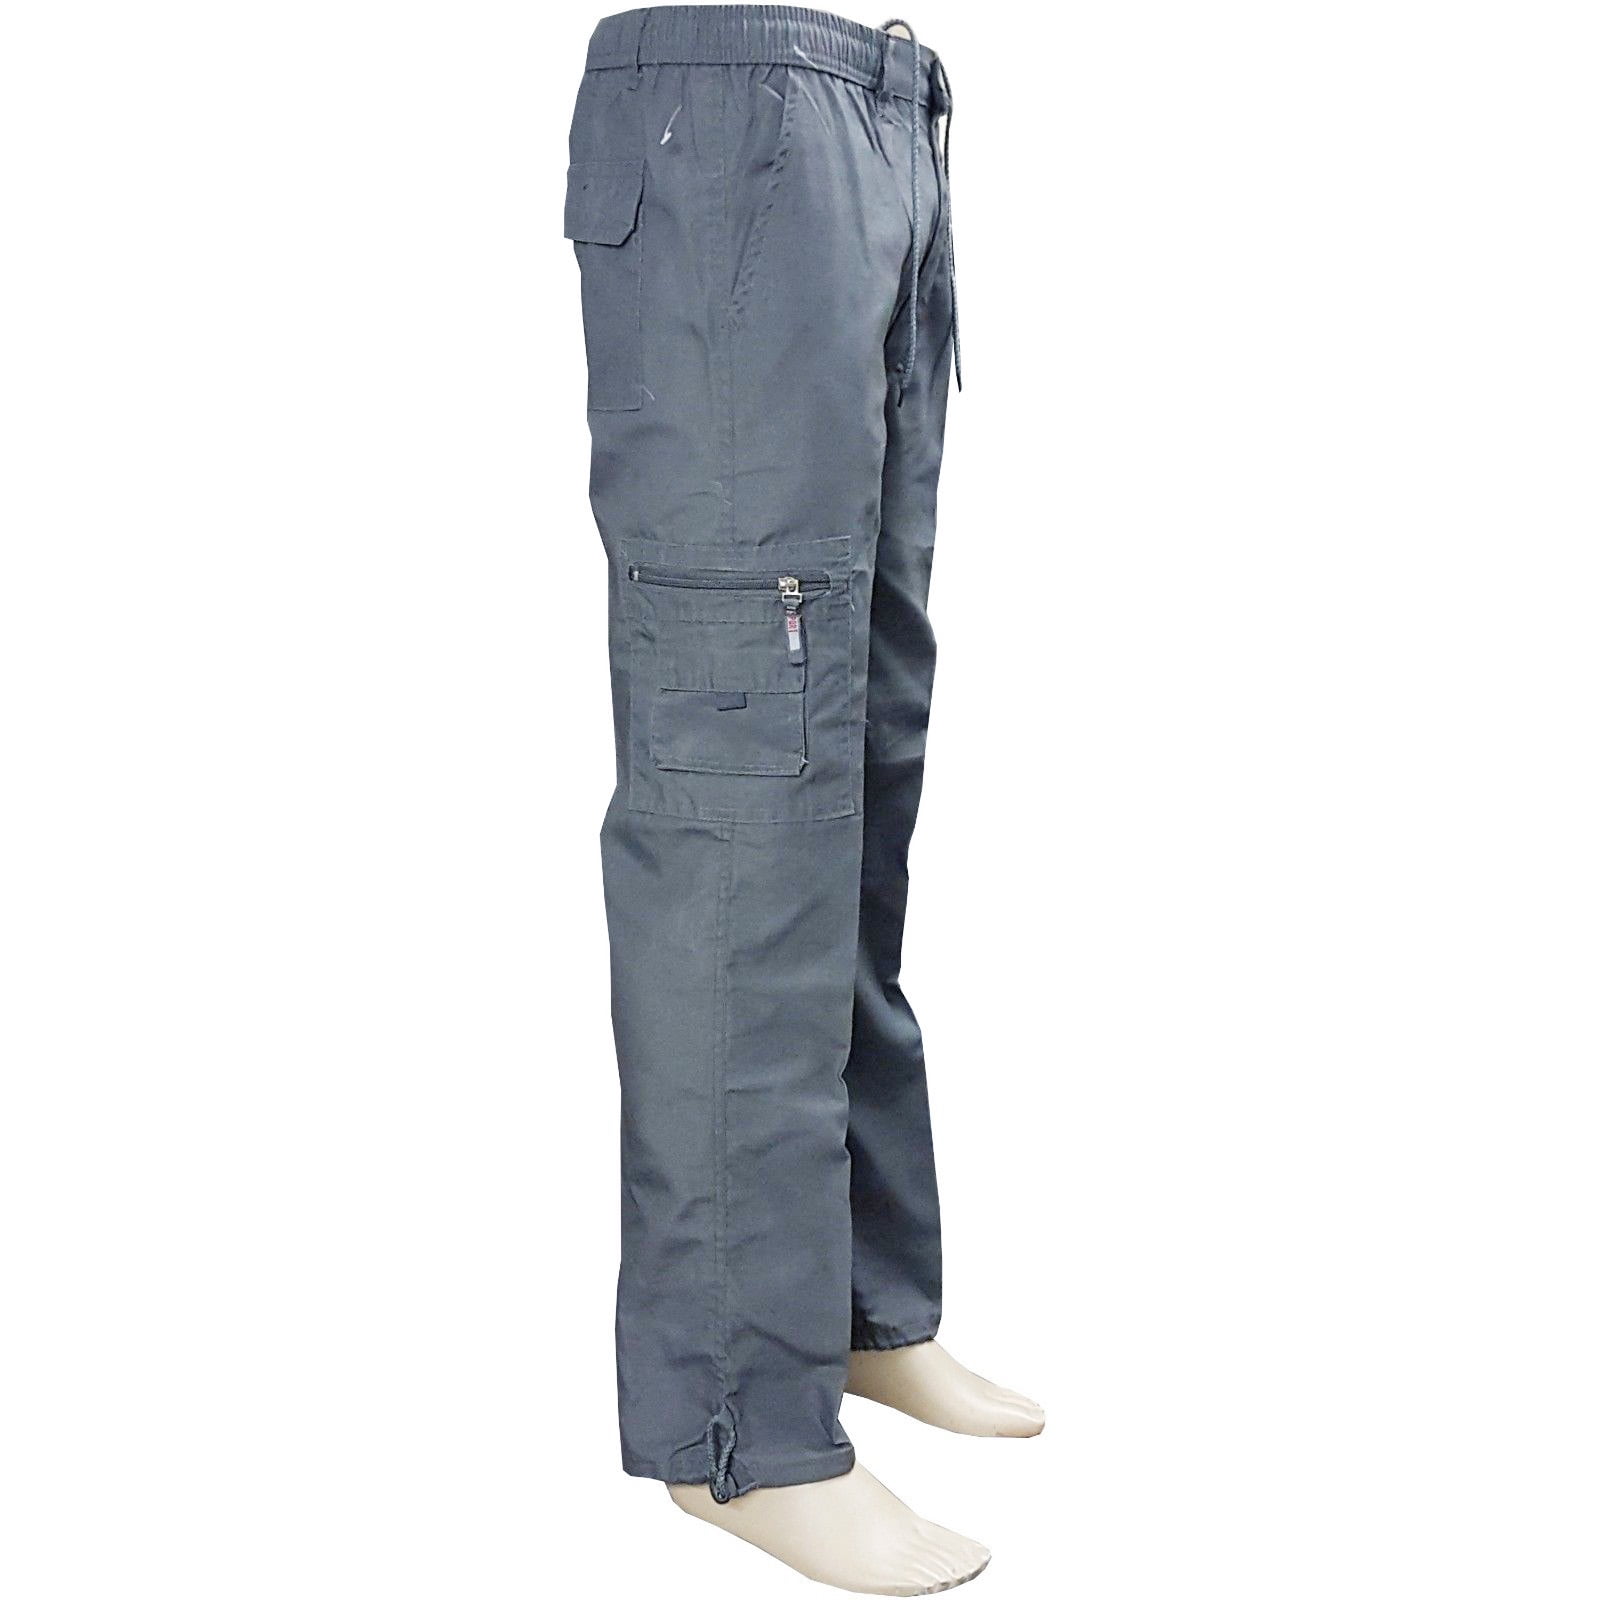 JCB Heavy duty Hard Combat Mens Cargo Trousers Work wear Pants knee pad pocket 